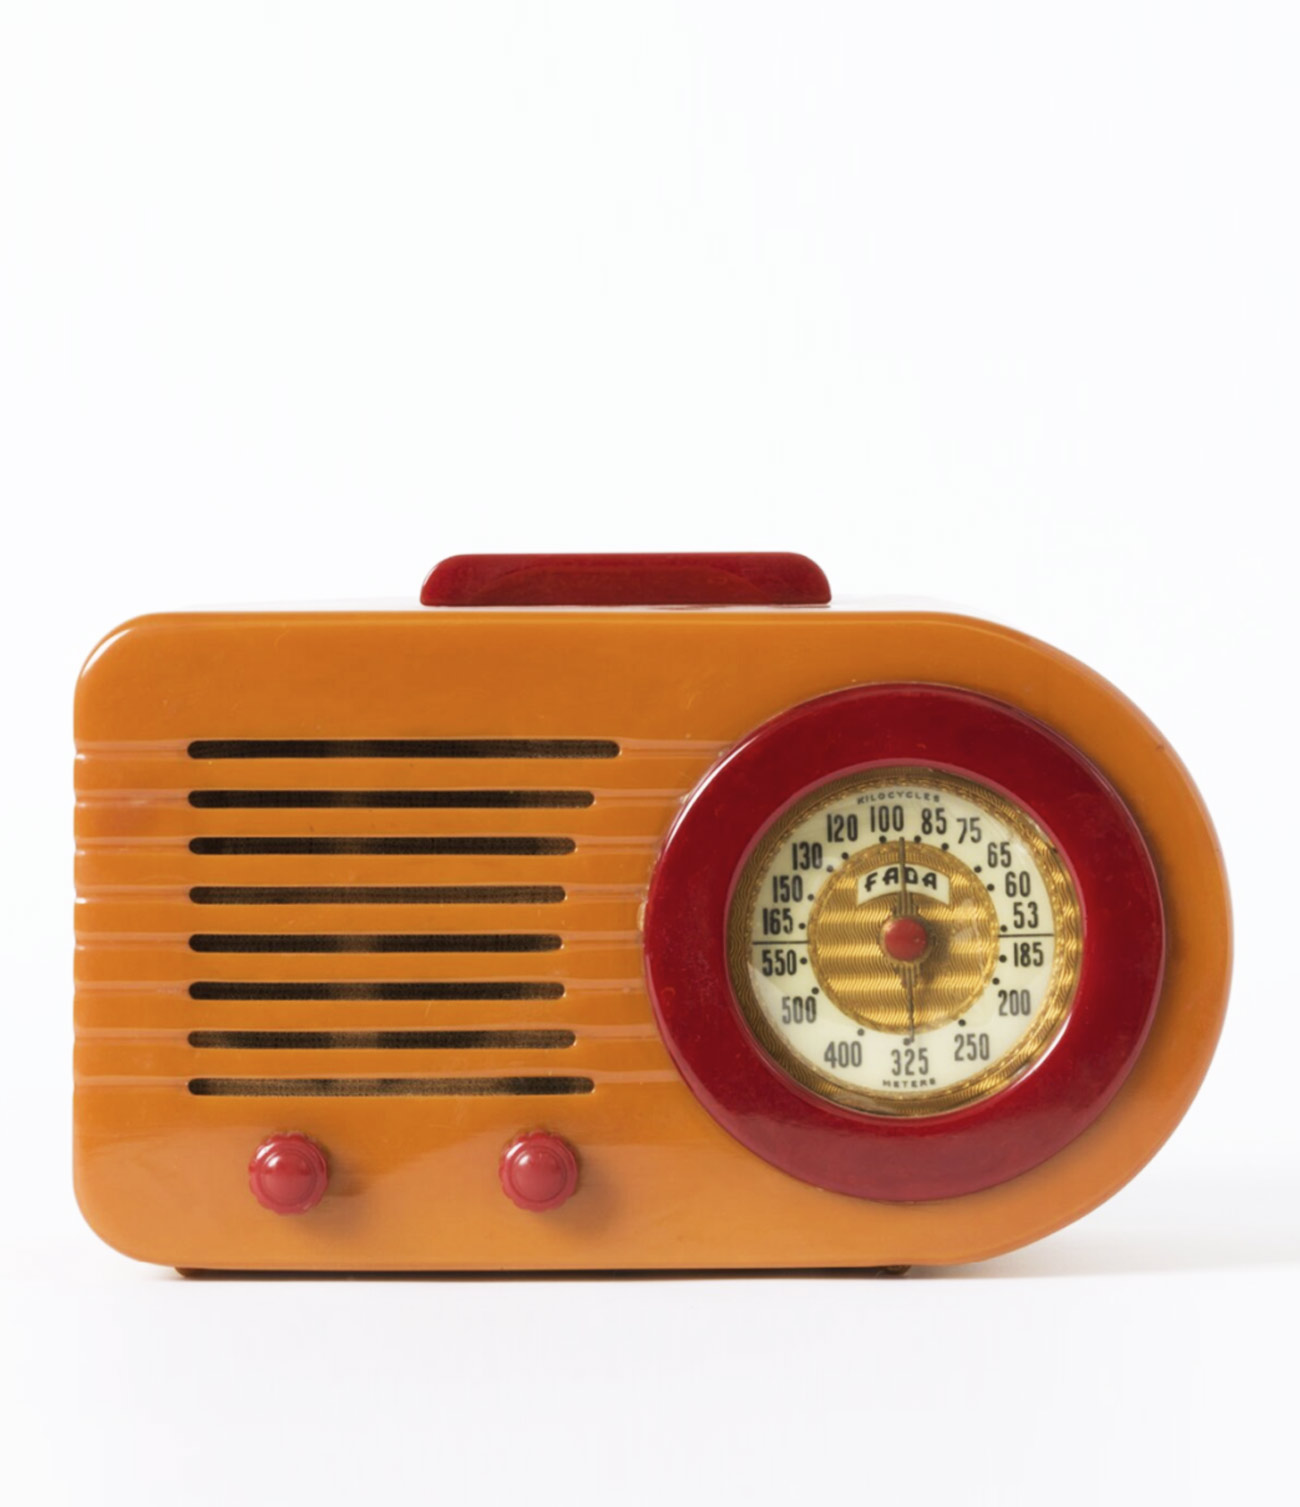 Abgebildet ist ein Radio. Es ist aus Kunststoff und hat eine ältere, runde Frequenzanzeige. Die Anzeige ist rot umrahmt. Der Griff und die Tasten sind ebenfalls rot. Das Gehäuse ist orange.